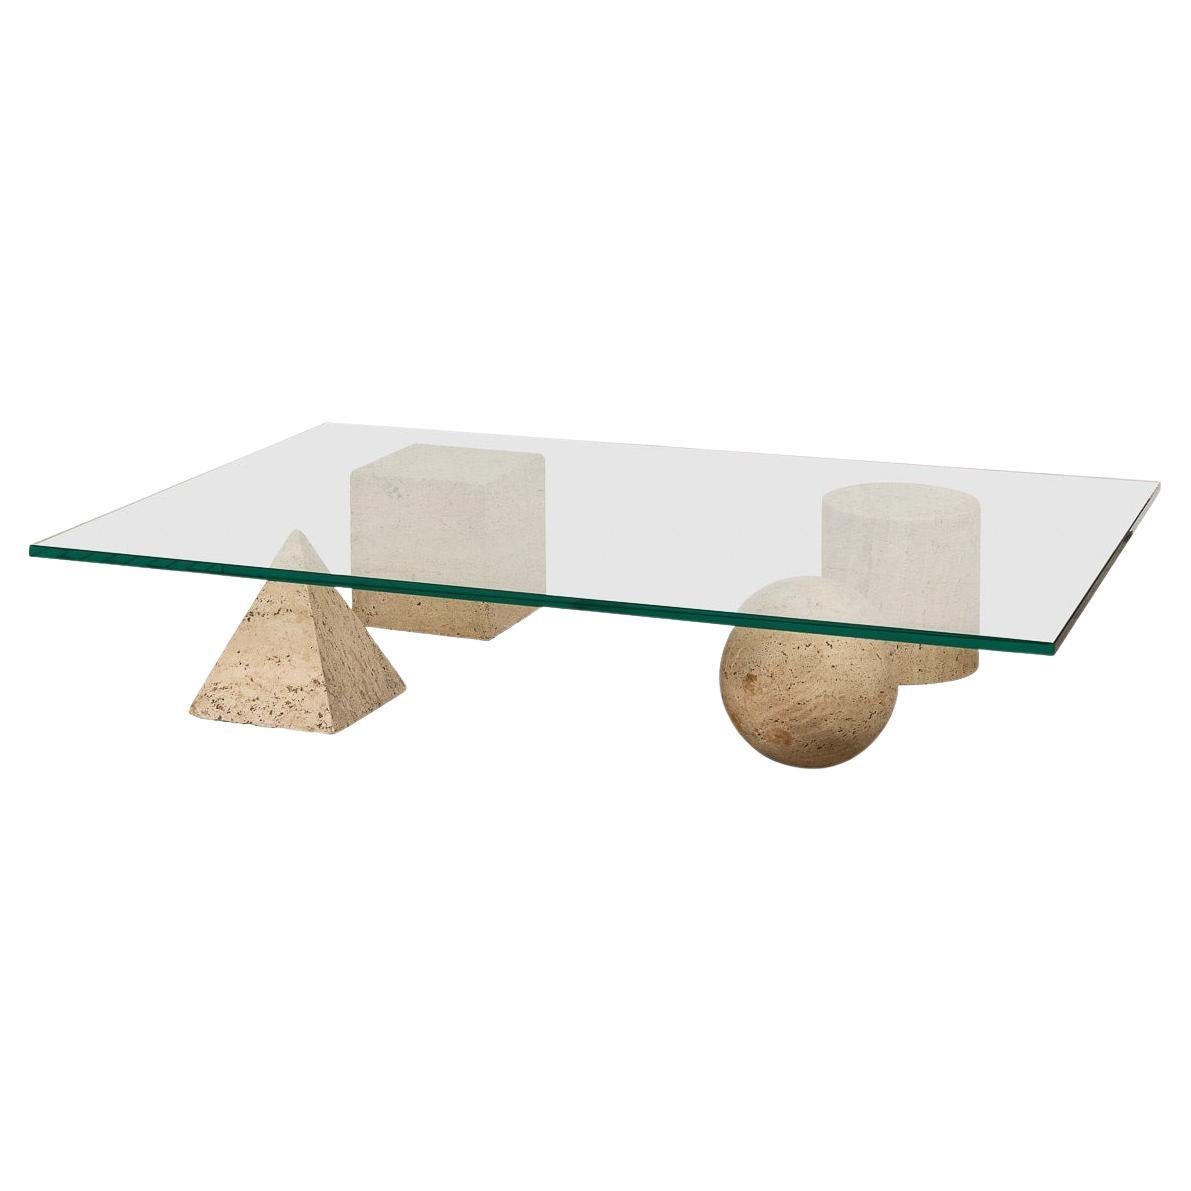 20th Century 'Metafora' Coffee Table by Lella & Massimo Vignelli for Casigliani